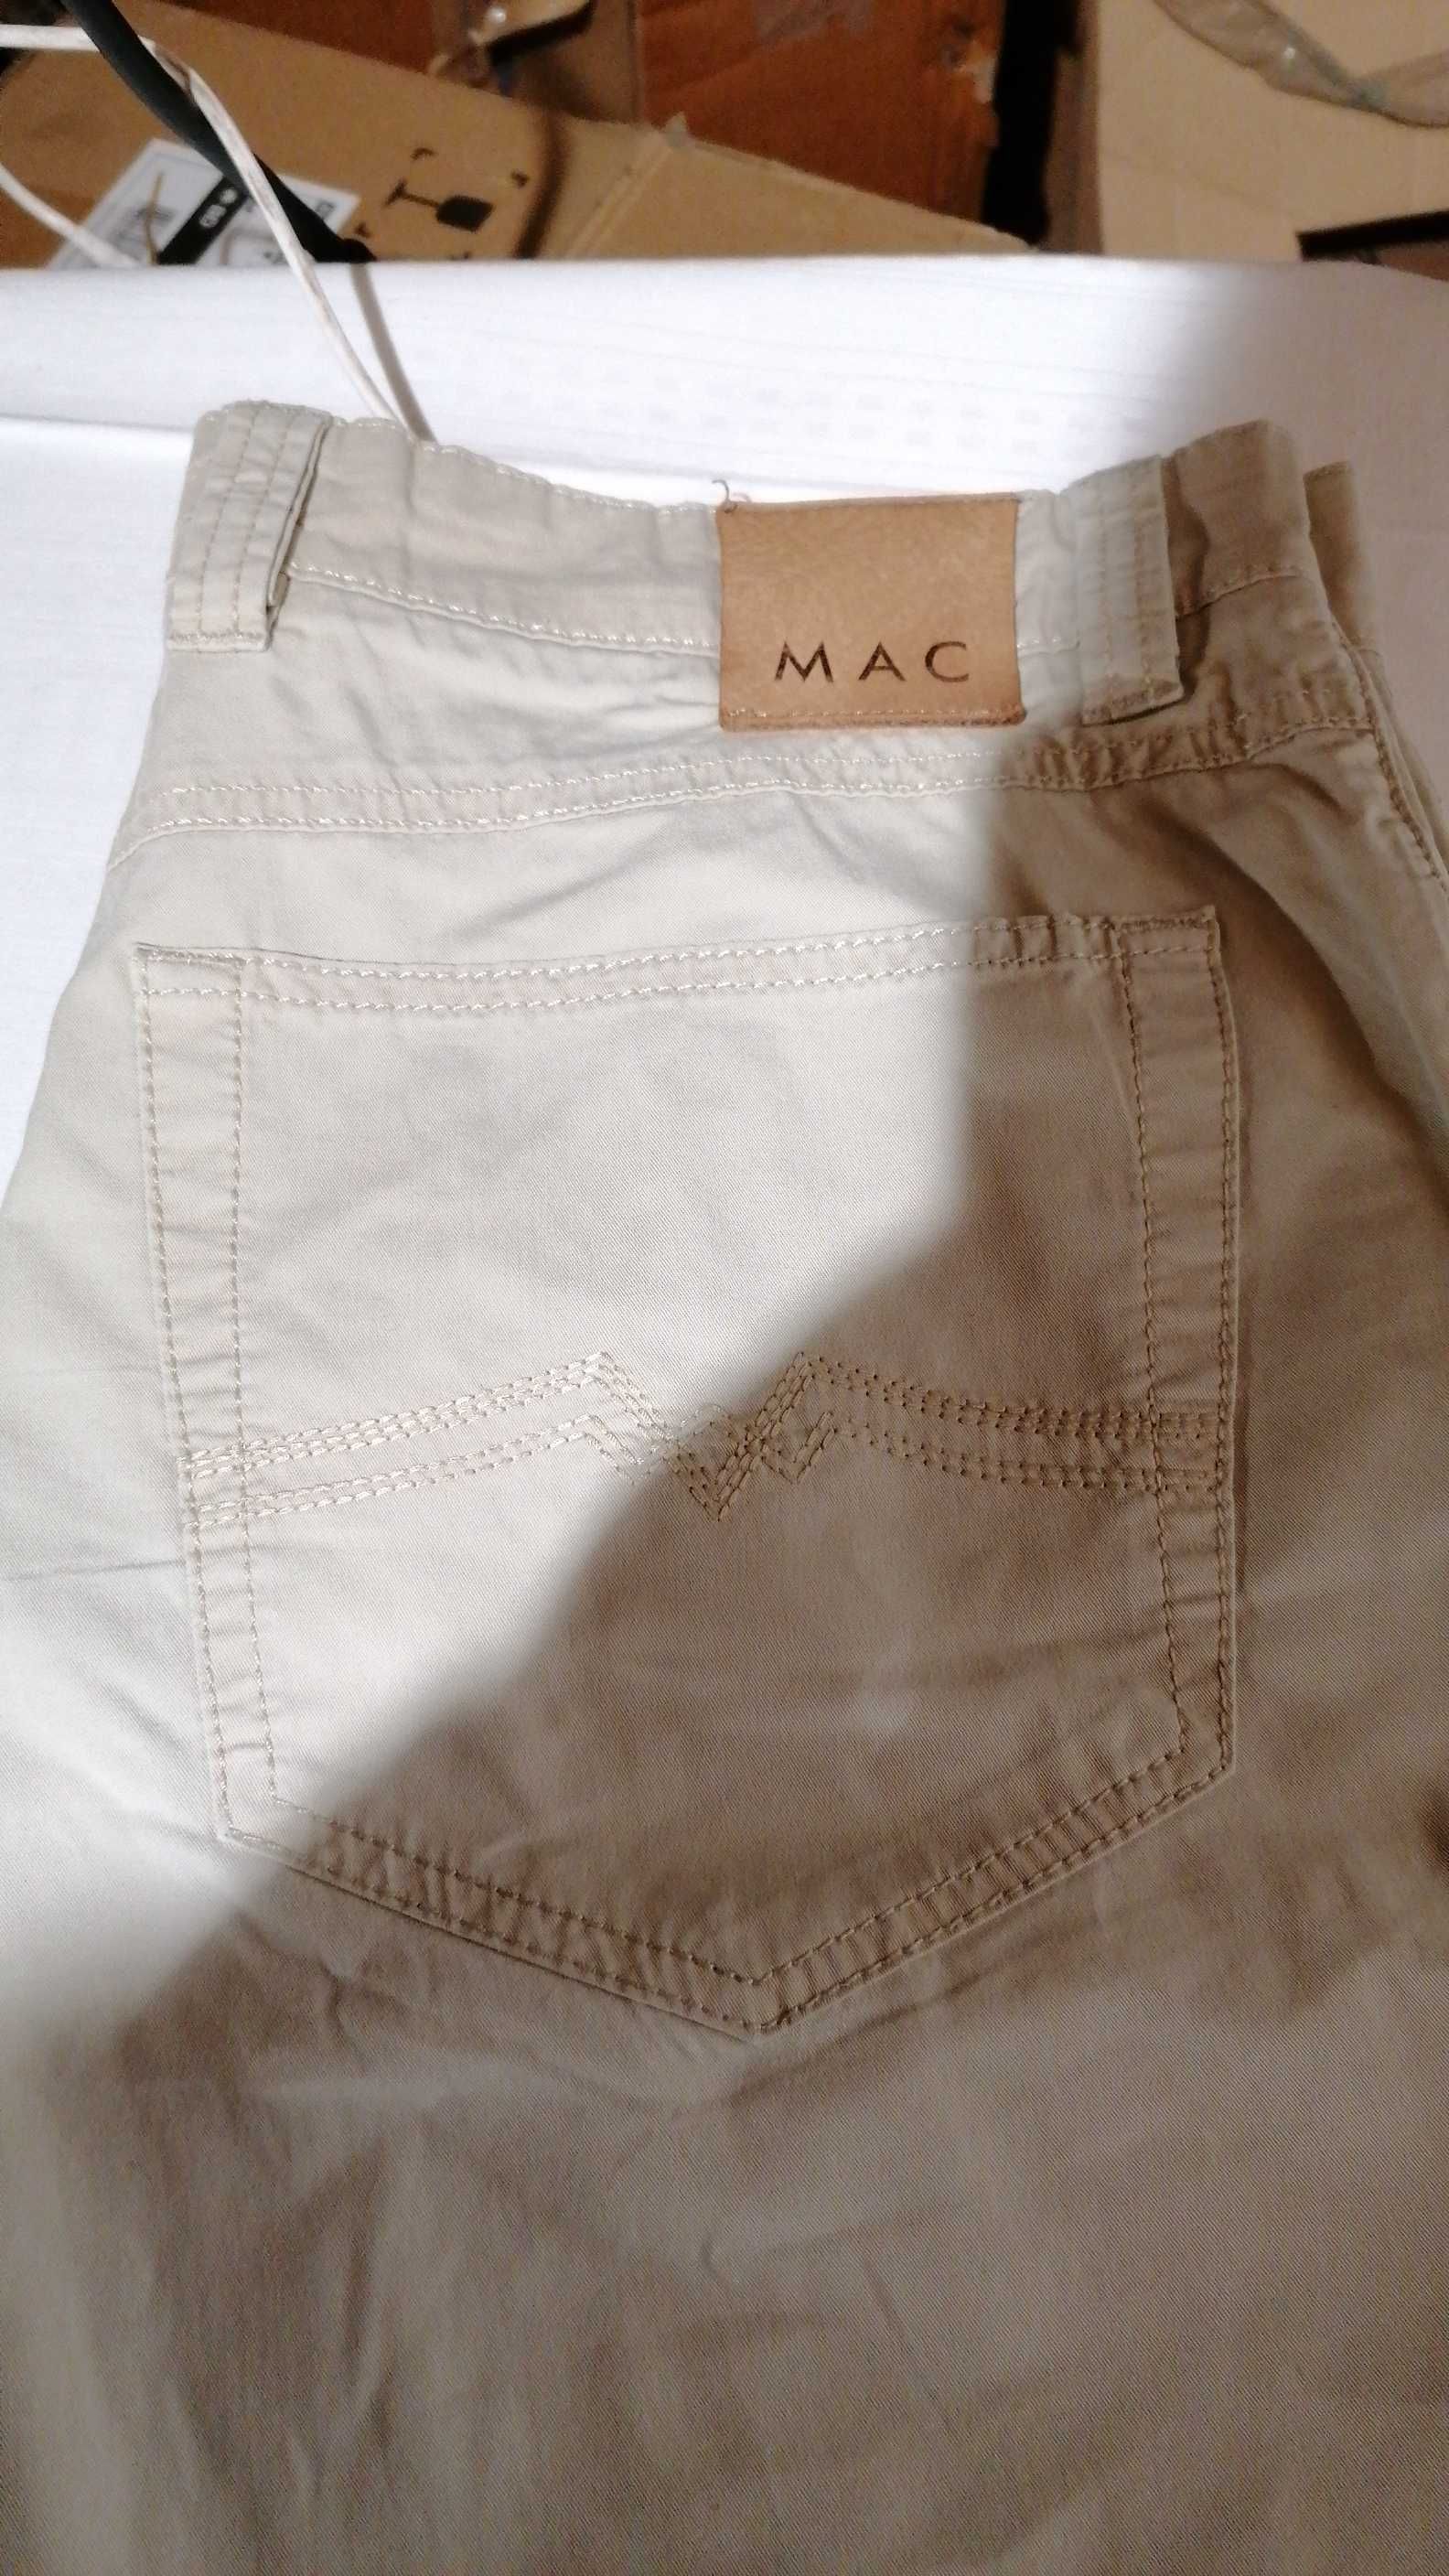 K/157 Spodnie męskie proste Mac  r. 32